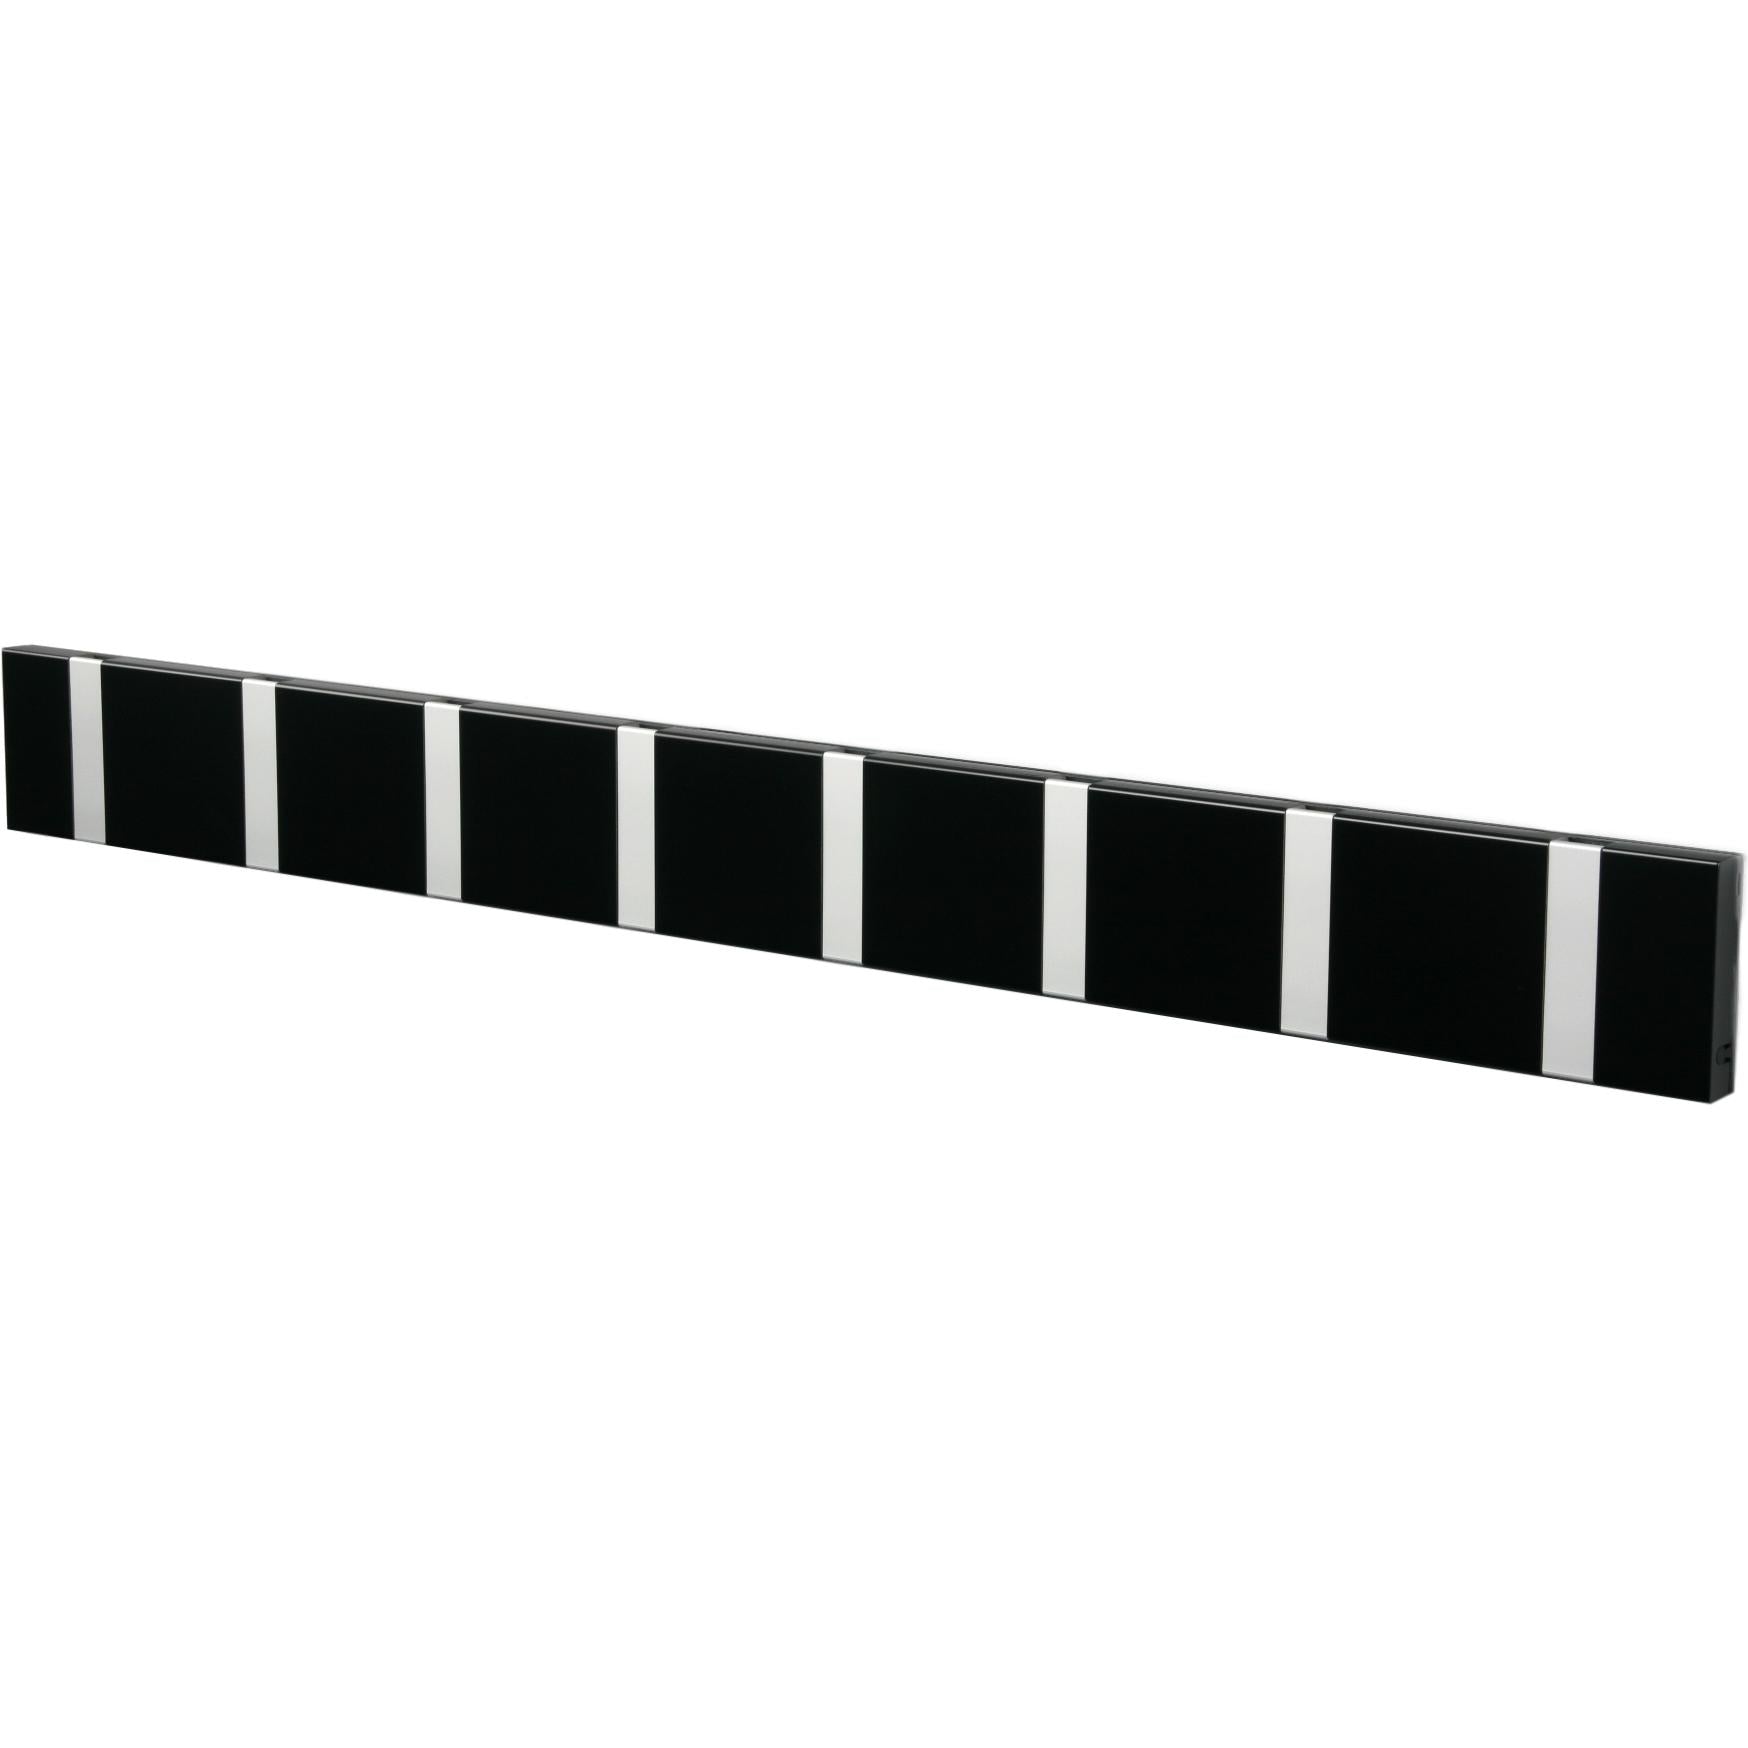 Loca Knax -vaakasuora takkiteline 8 koukkua, musta/harmaa